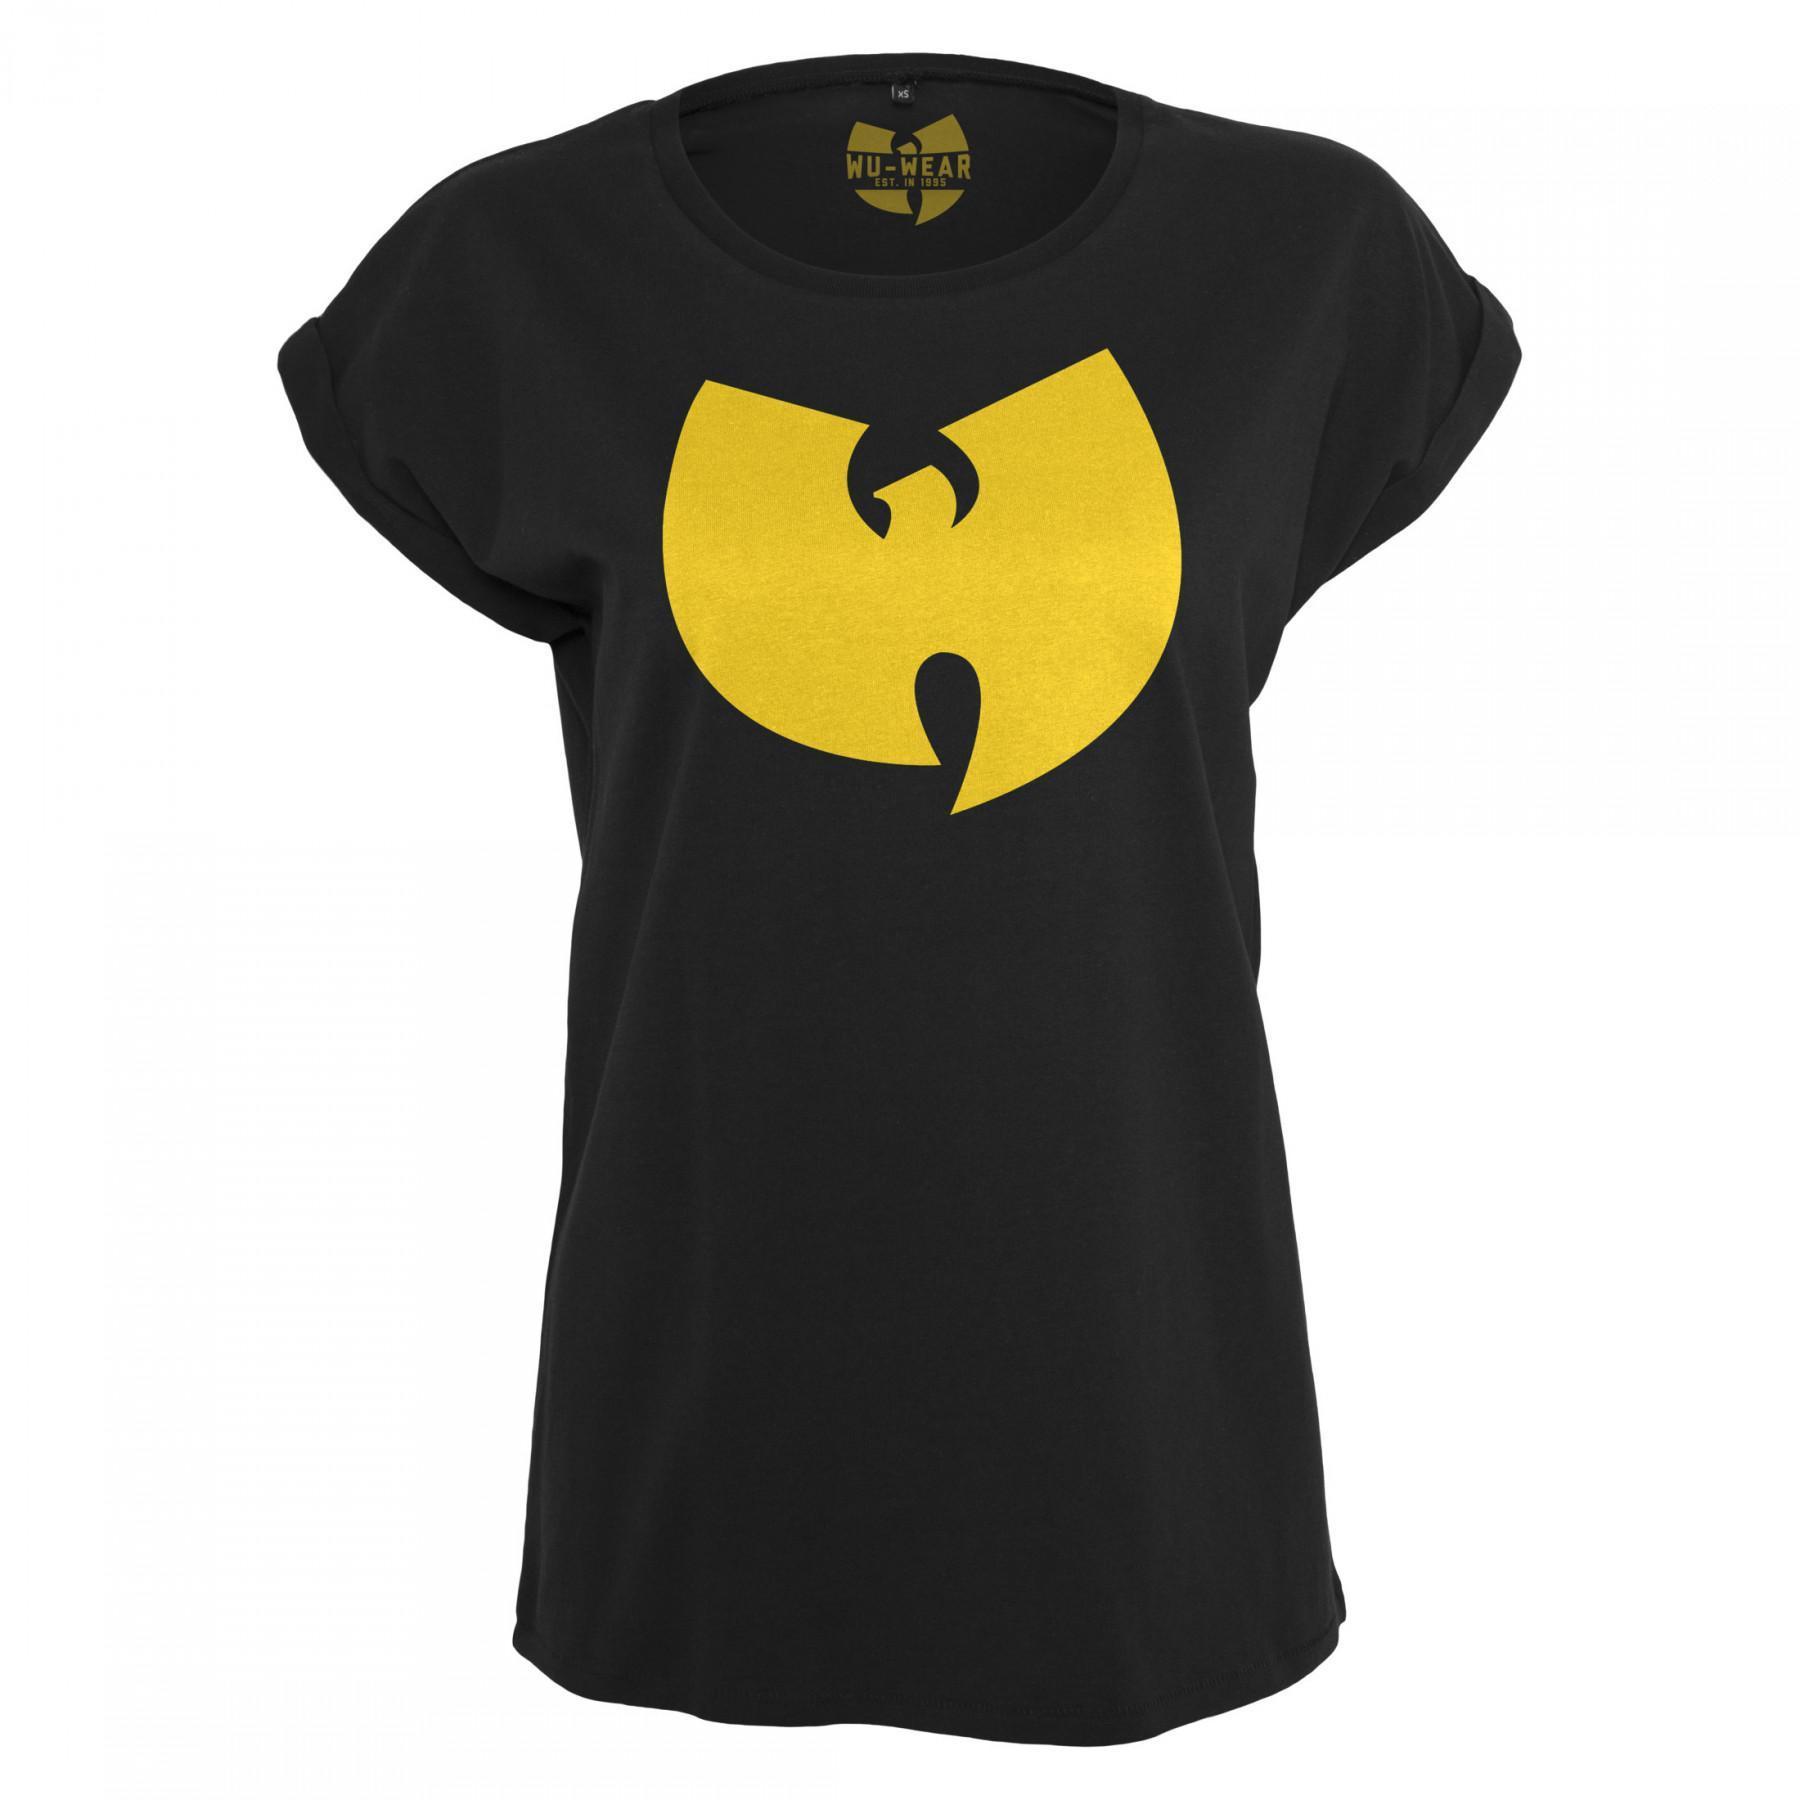 T-shirt woman Wu-wear logo